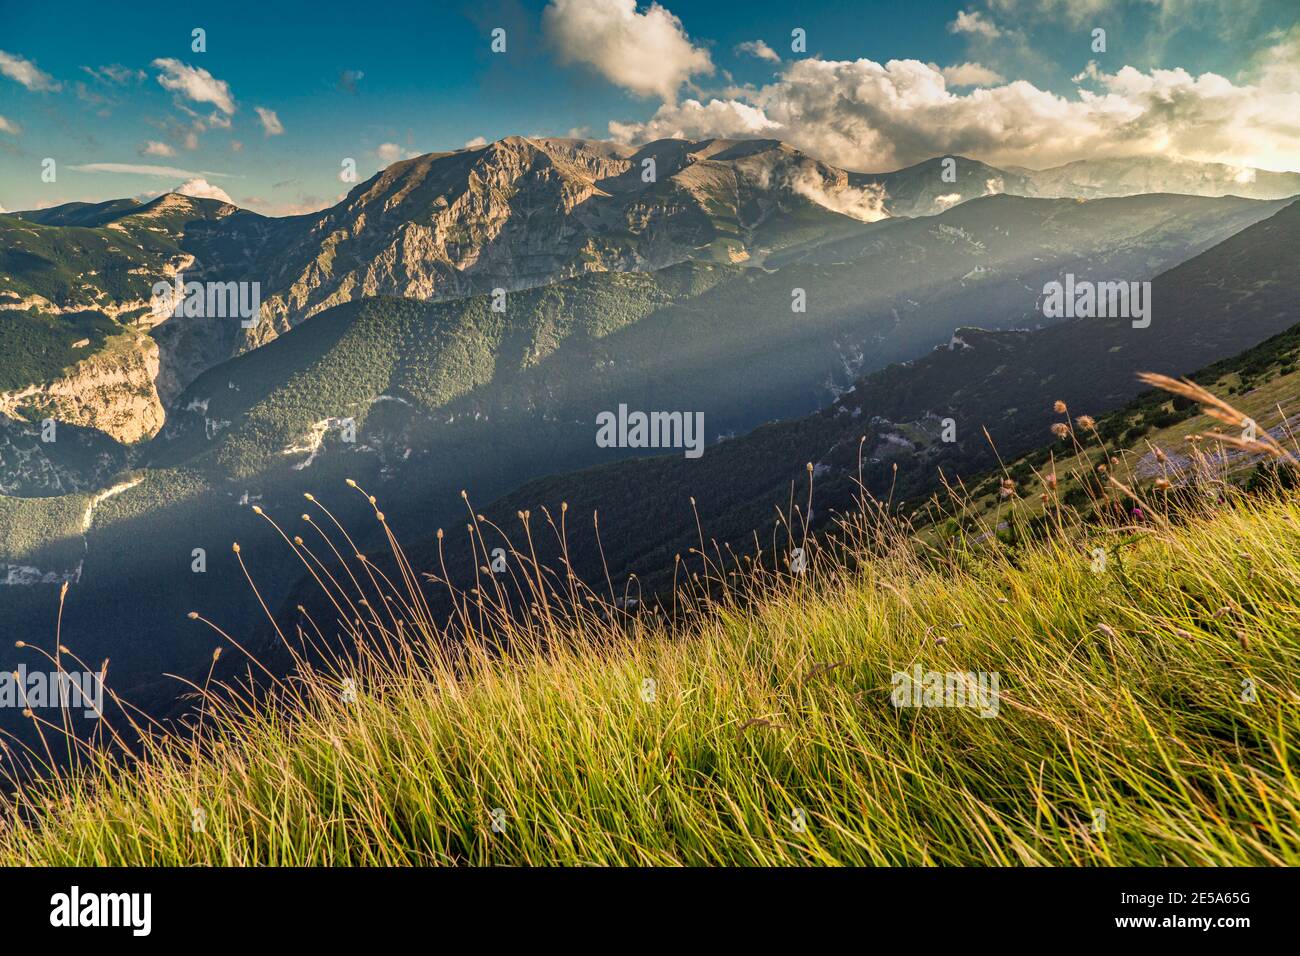 Los últimos rayos del sol iluminan el Monte Acquaviva y la cima de la sierra de Murelle de la Maiella. Parque Nacional Maiella, Abruzzo, Italia Foto de stock